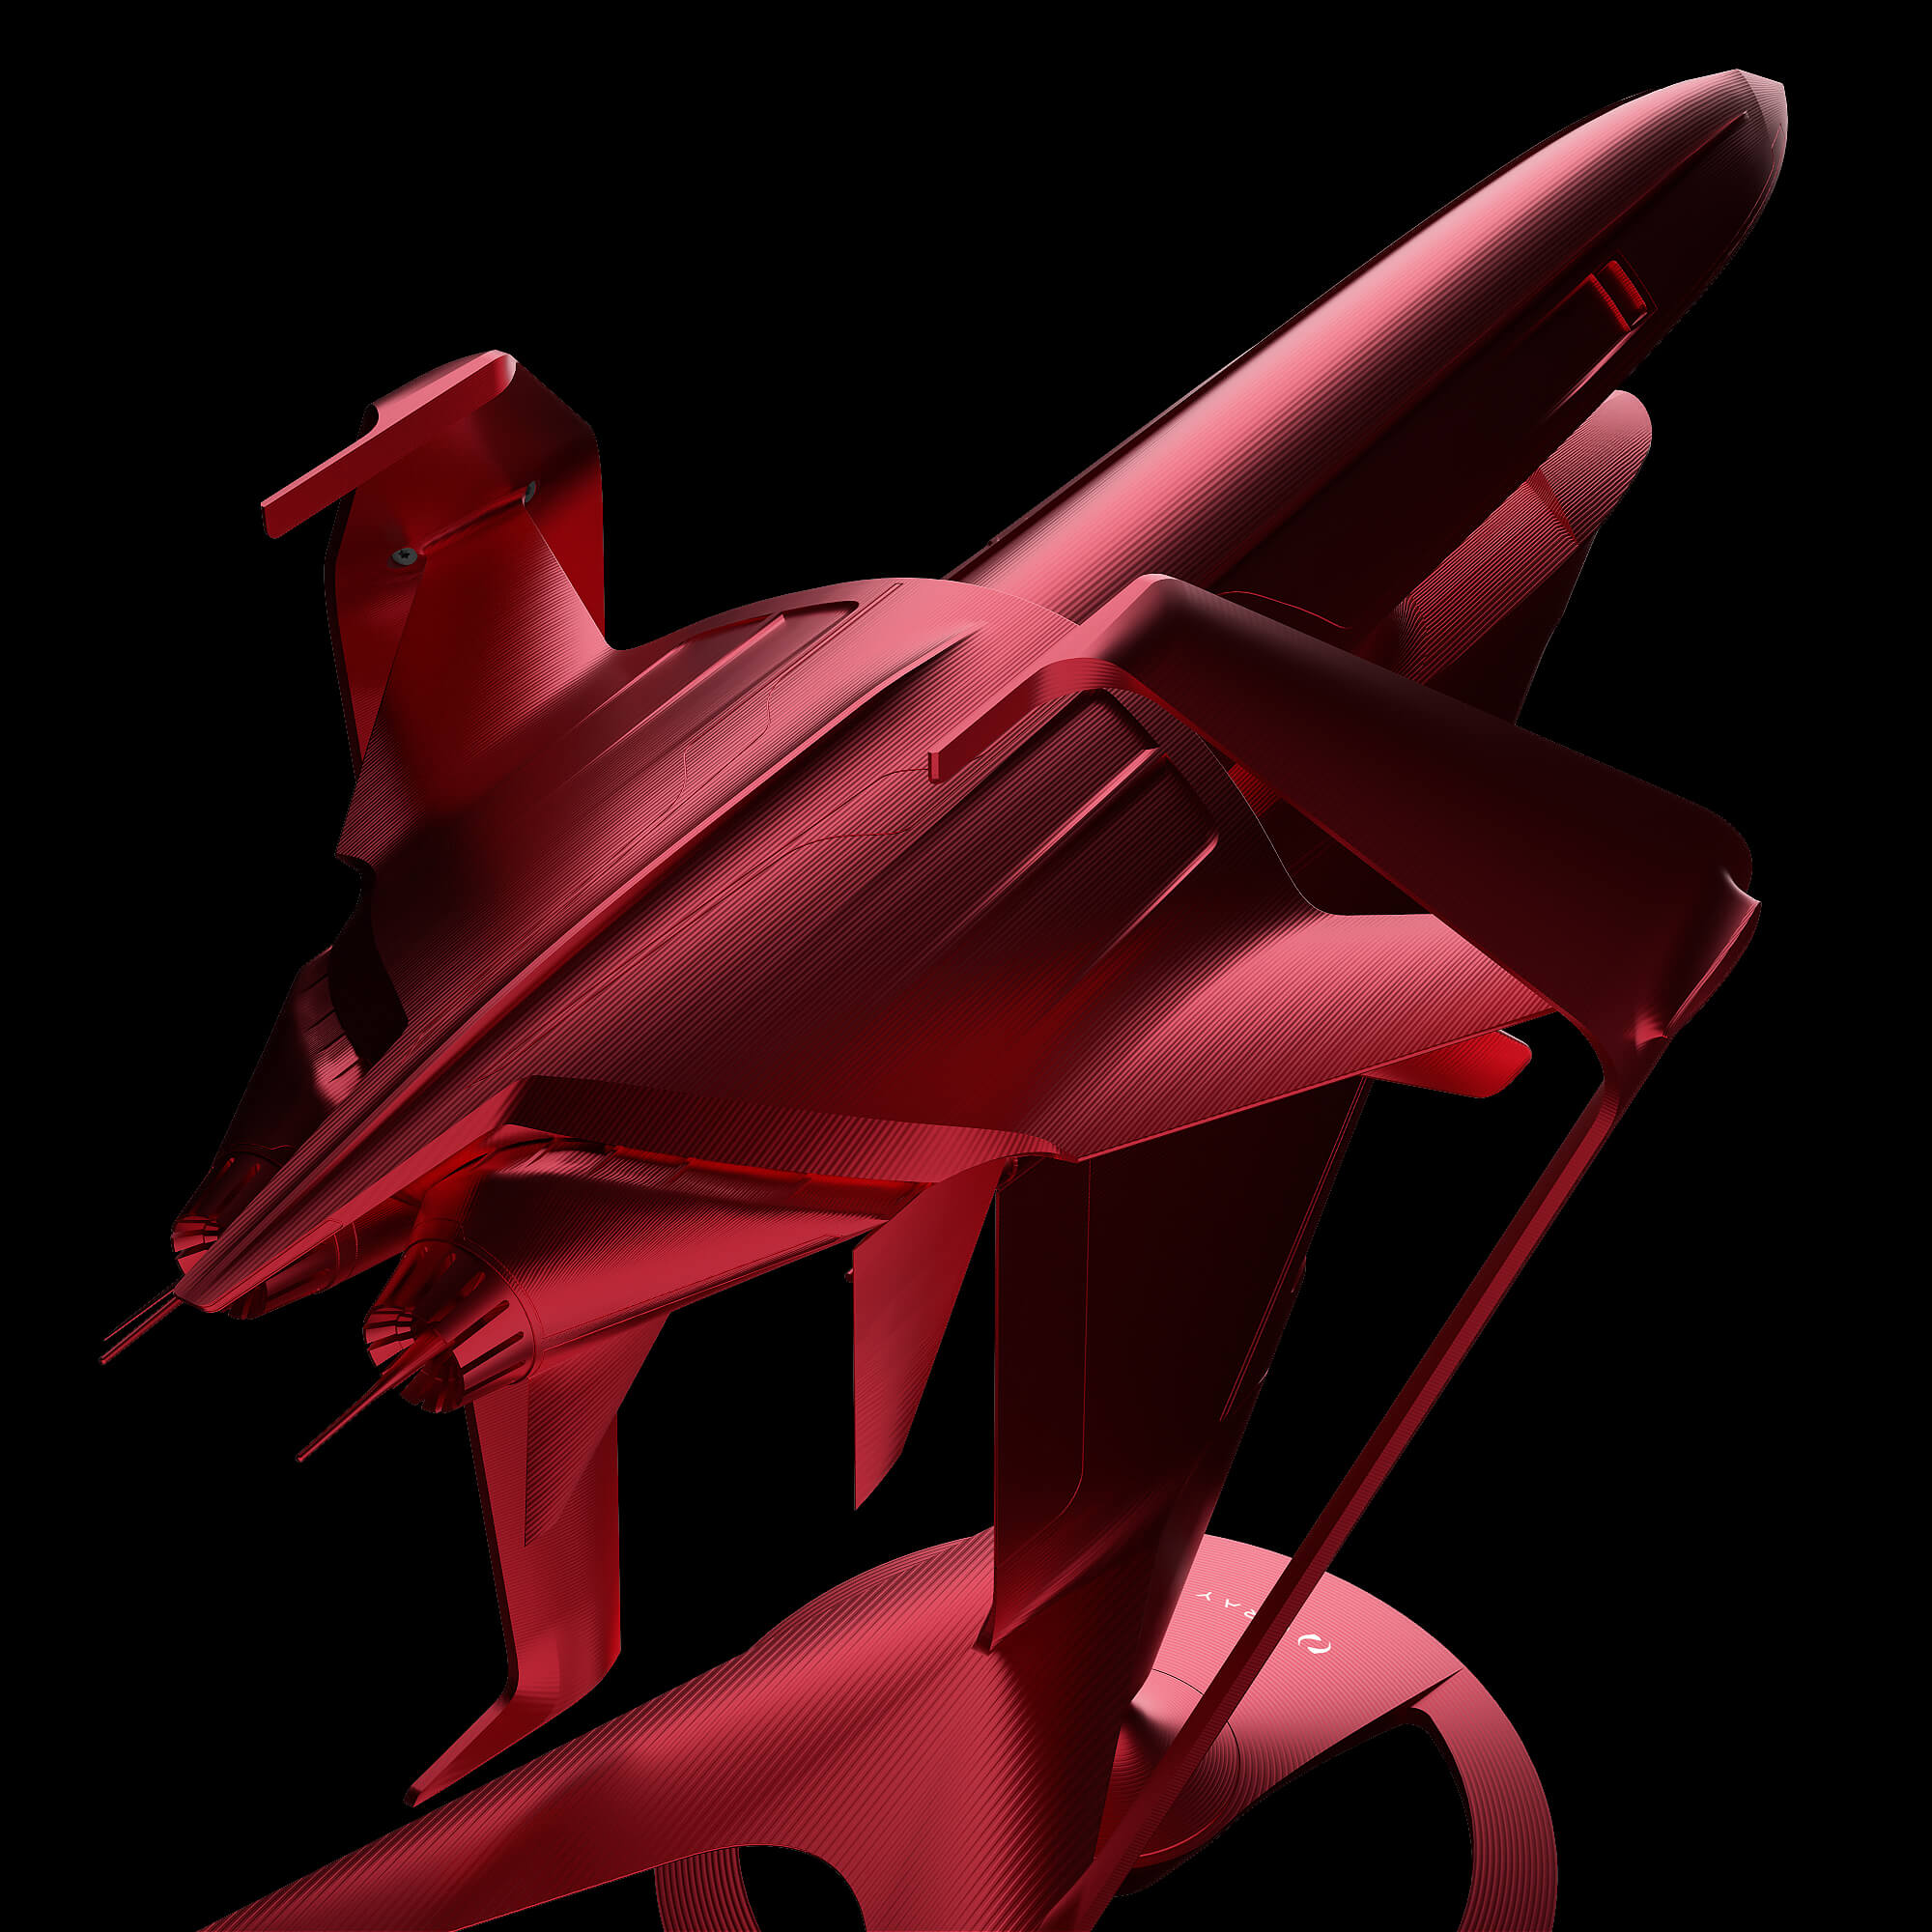 graycraft1-4 pulsar red aluminium spaceship art sculpture